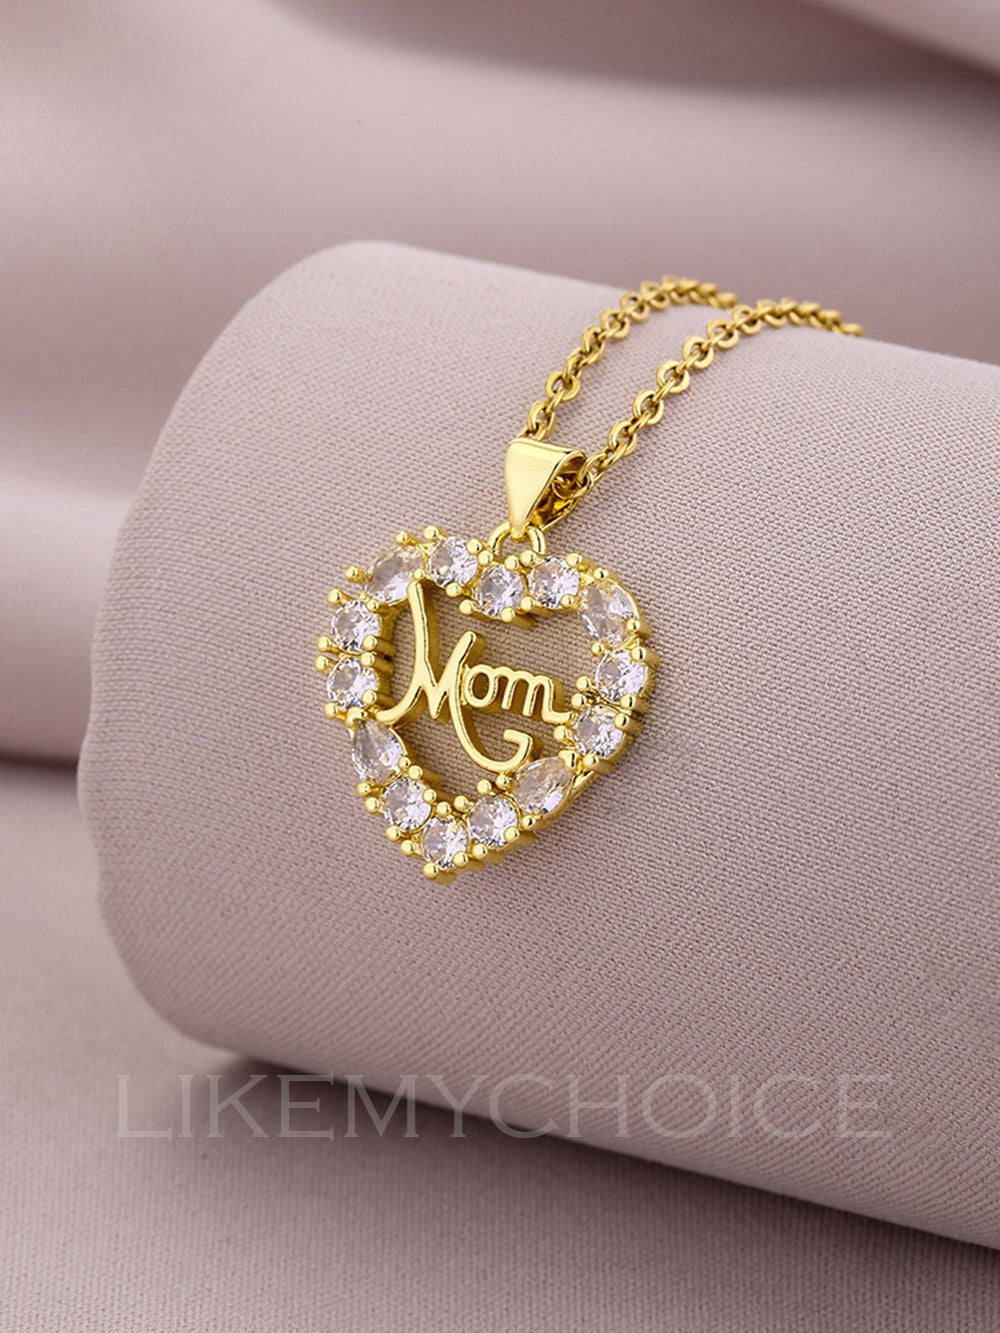 Moda cobre com colar de mãe elegante em formato de coração de zircônia